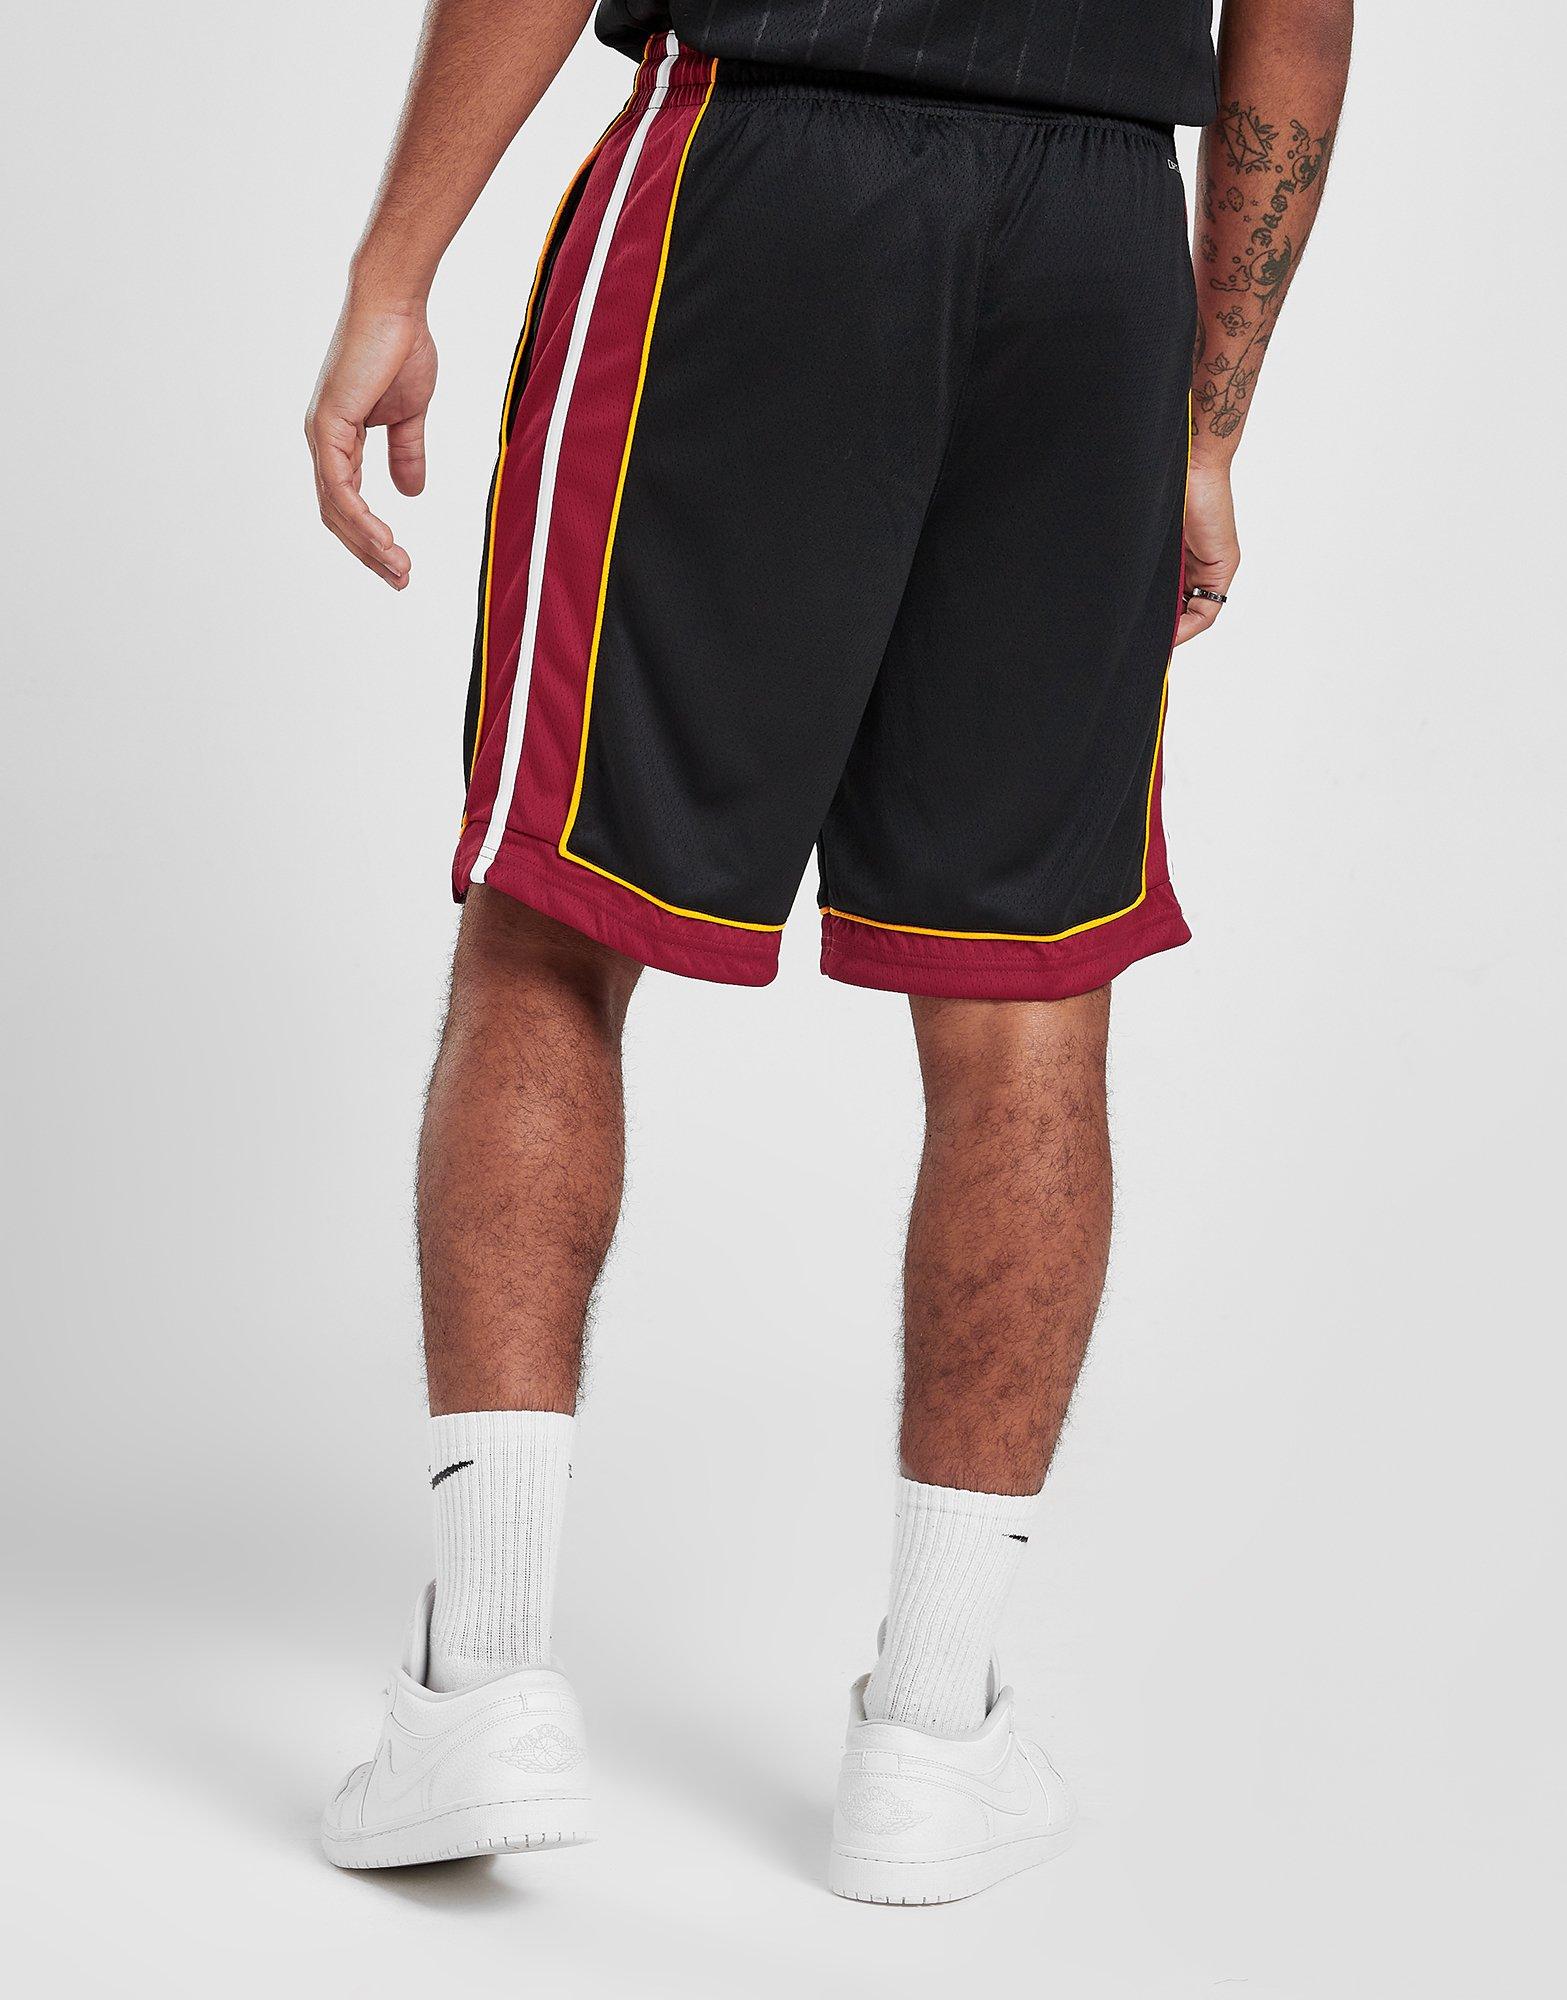 Miami Heat Men's Nike NBA Swingman Shorts. Nike LU